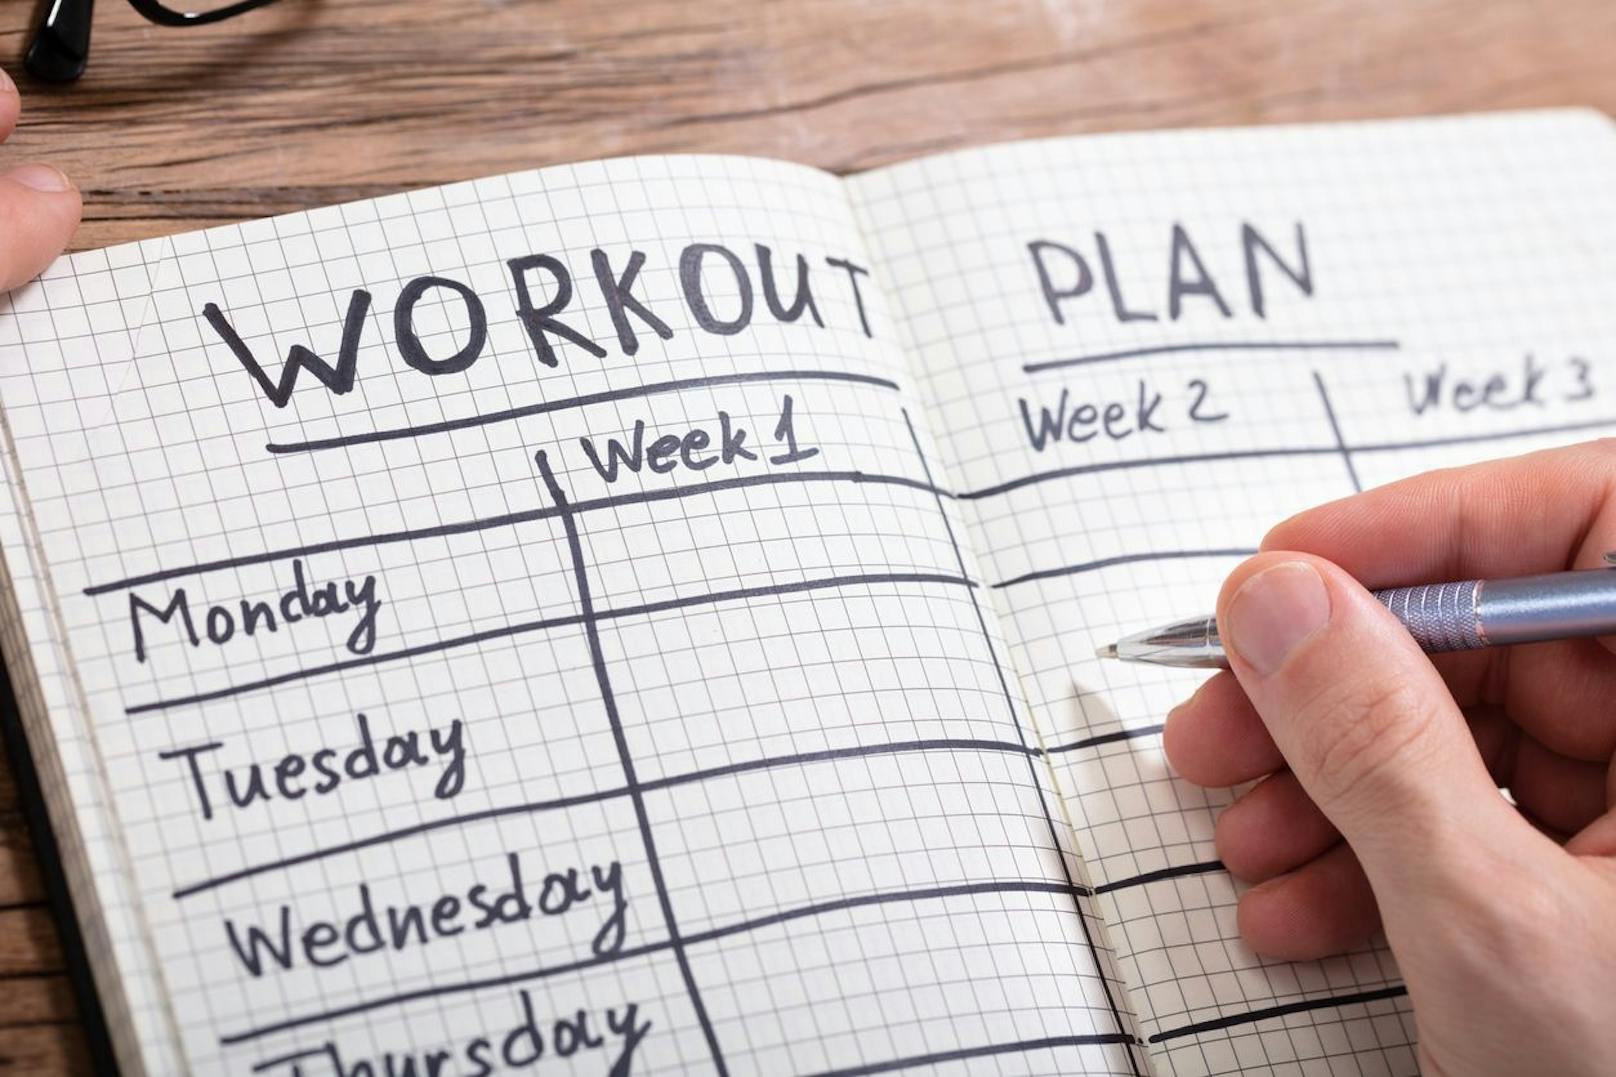 Du kannst deine Trainings-Routine in sechs Work-Outs aufteilen, die jeweils 30 Minuten dauern. An drei Tagen brauchst du Krafttrainings-Sessions und an drei weiteren Tagen ein gutes Cardio-Workout.